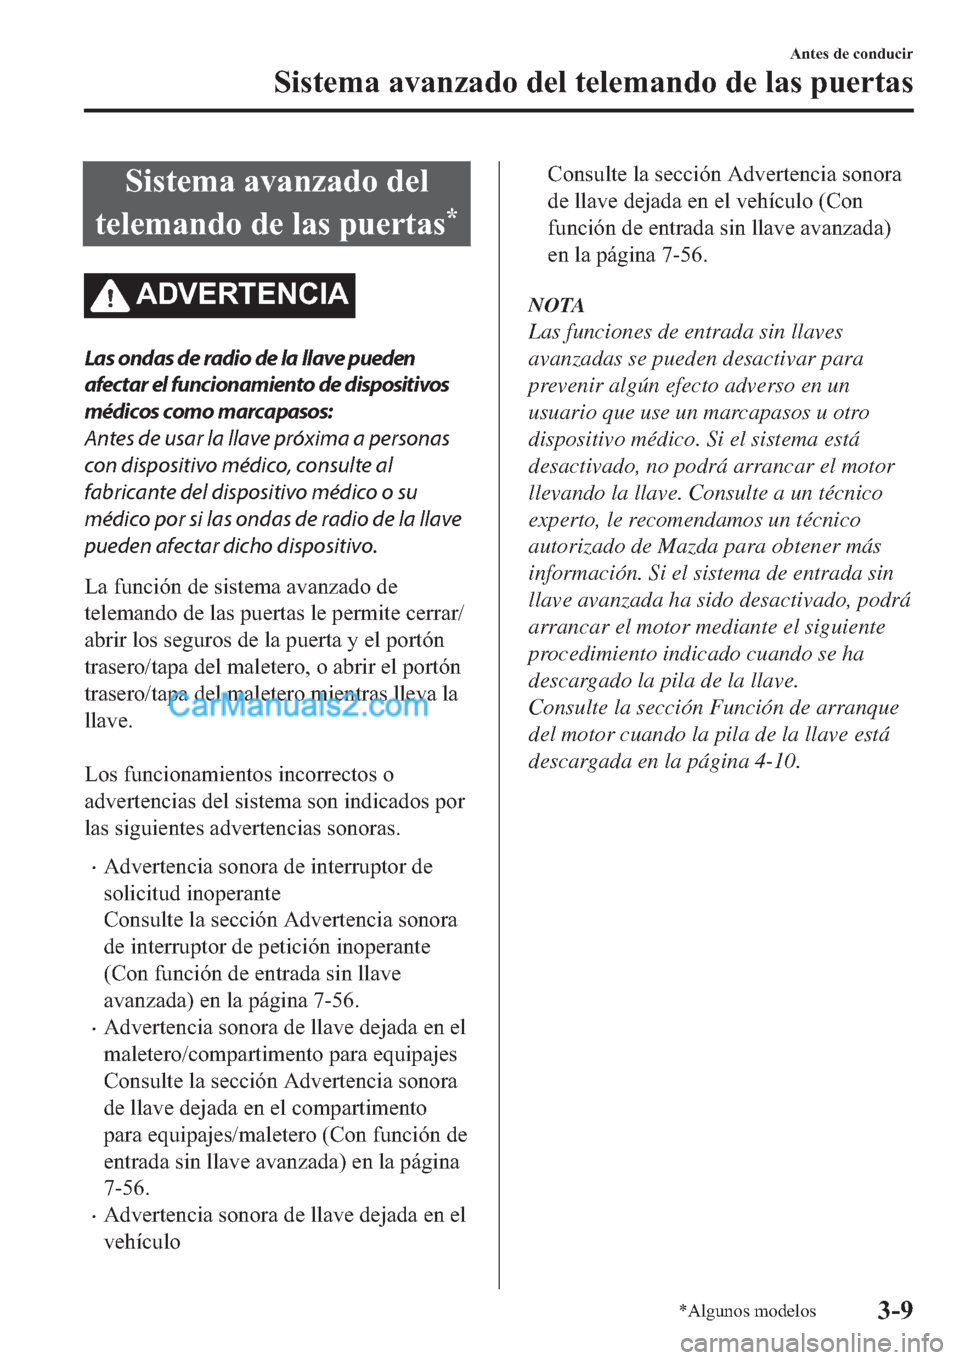 MAZDA MODEL 2 2019  Manual del propietario (in Spanish) �6�L�V�W�H�P�D��D�Y�D�Q�]�D�G�R��G�H�O
�W�H�O�H�P�D�Q�G�R��G�H��O�D�V��S�X�H�U�W�D�V
�
�$��9�(�5�7�(�1�&�,�$
Las ondas de radio de la llave pueden
afectar el funcionamiento de dispositivos
méd